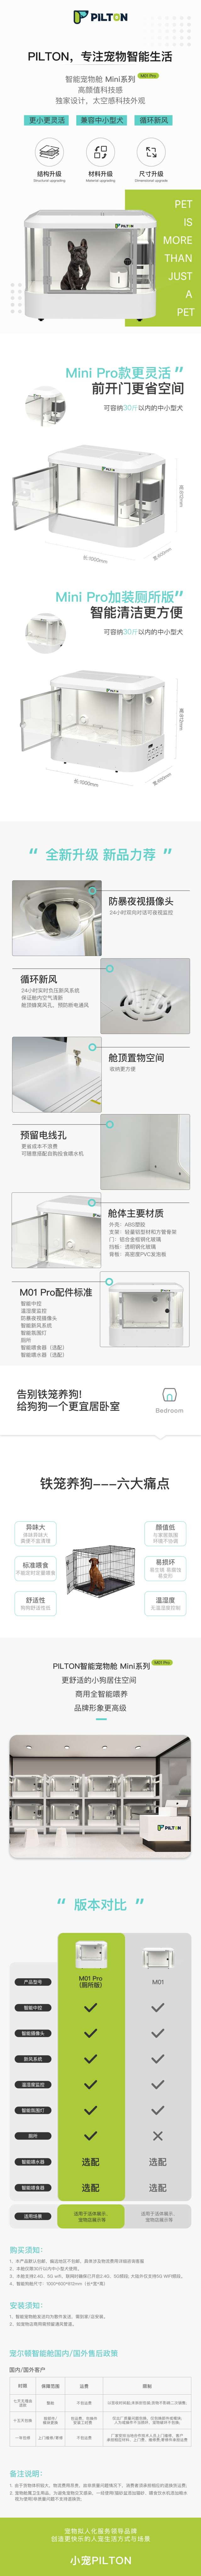 M01-Pro.jpg